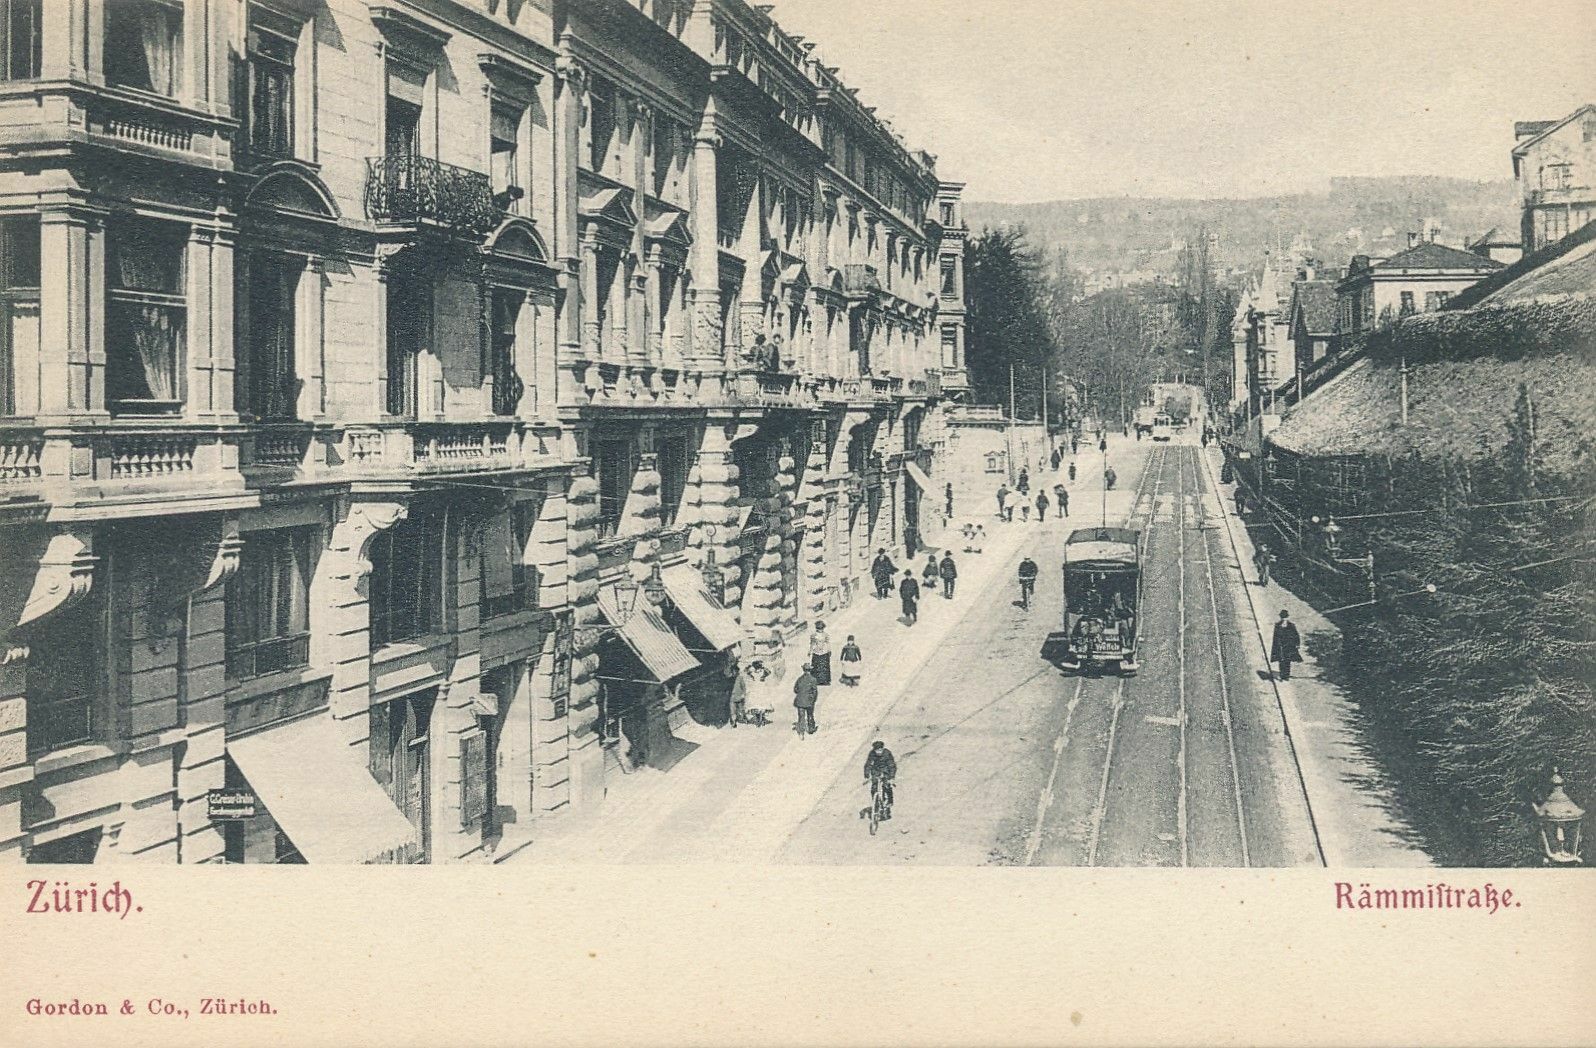 ZURICH - Rammiftrake - Switzerland - udb (pre 1908)